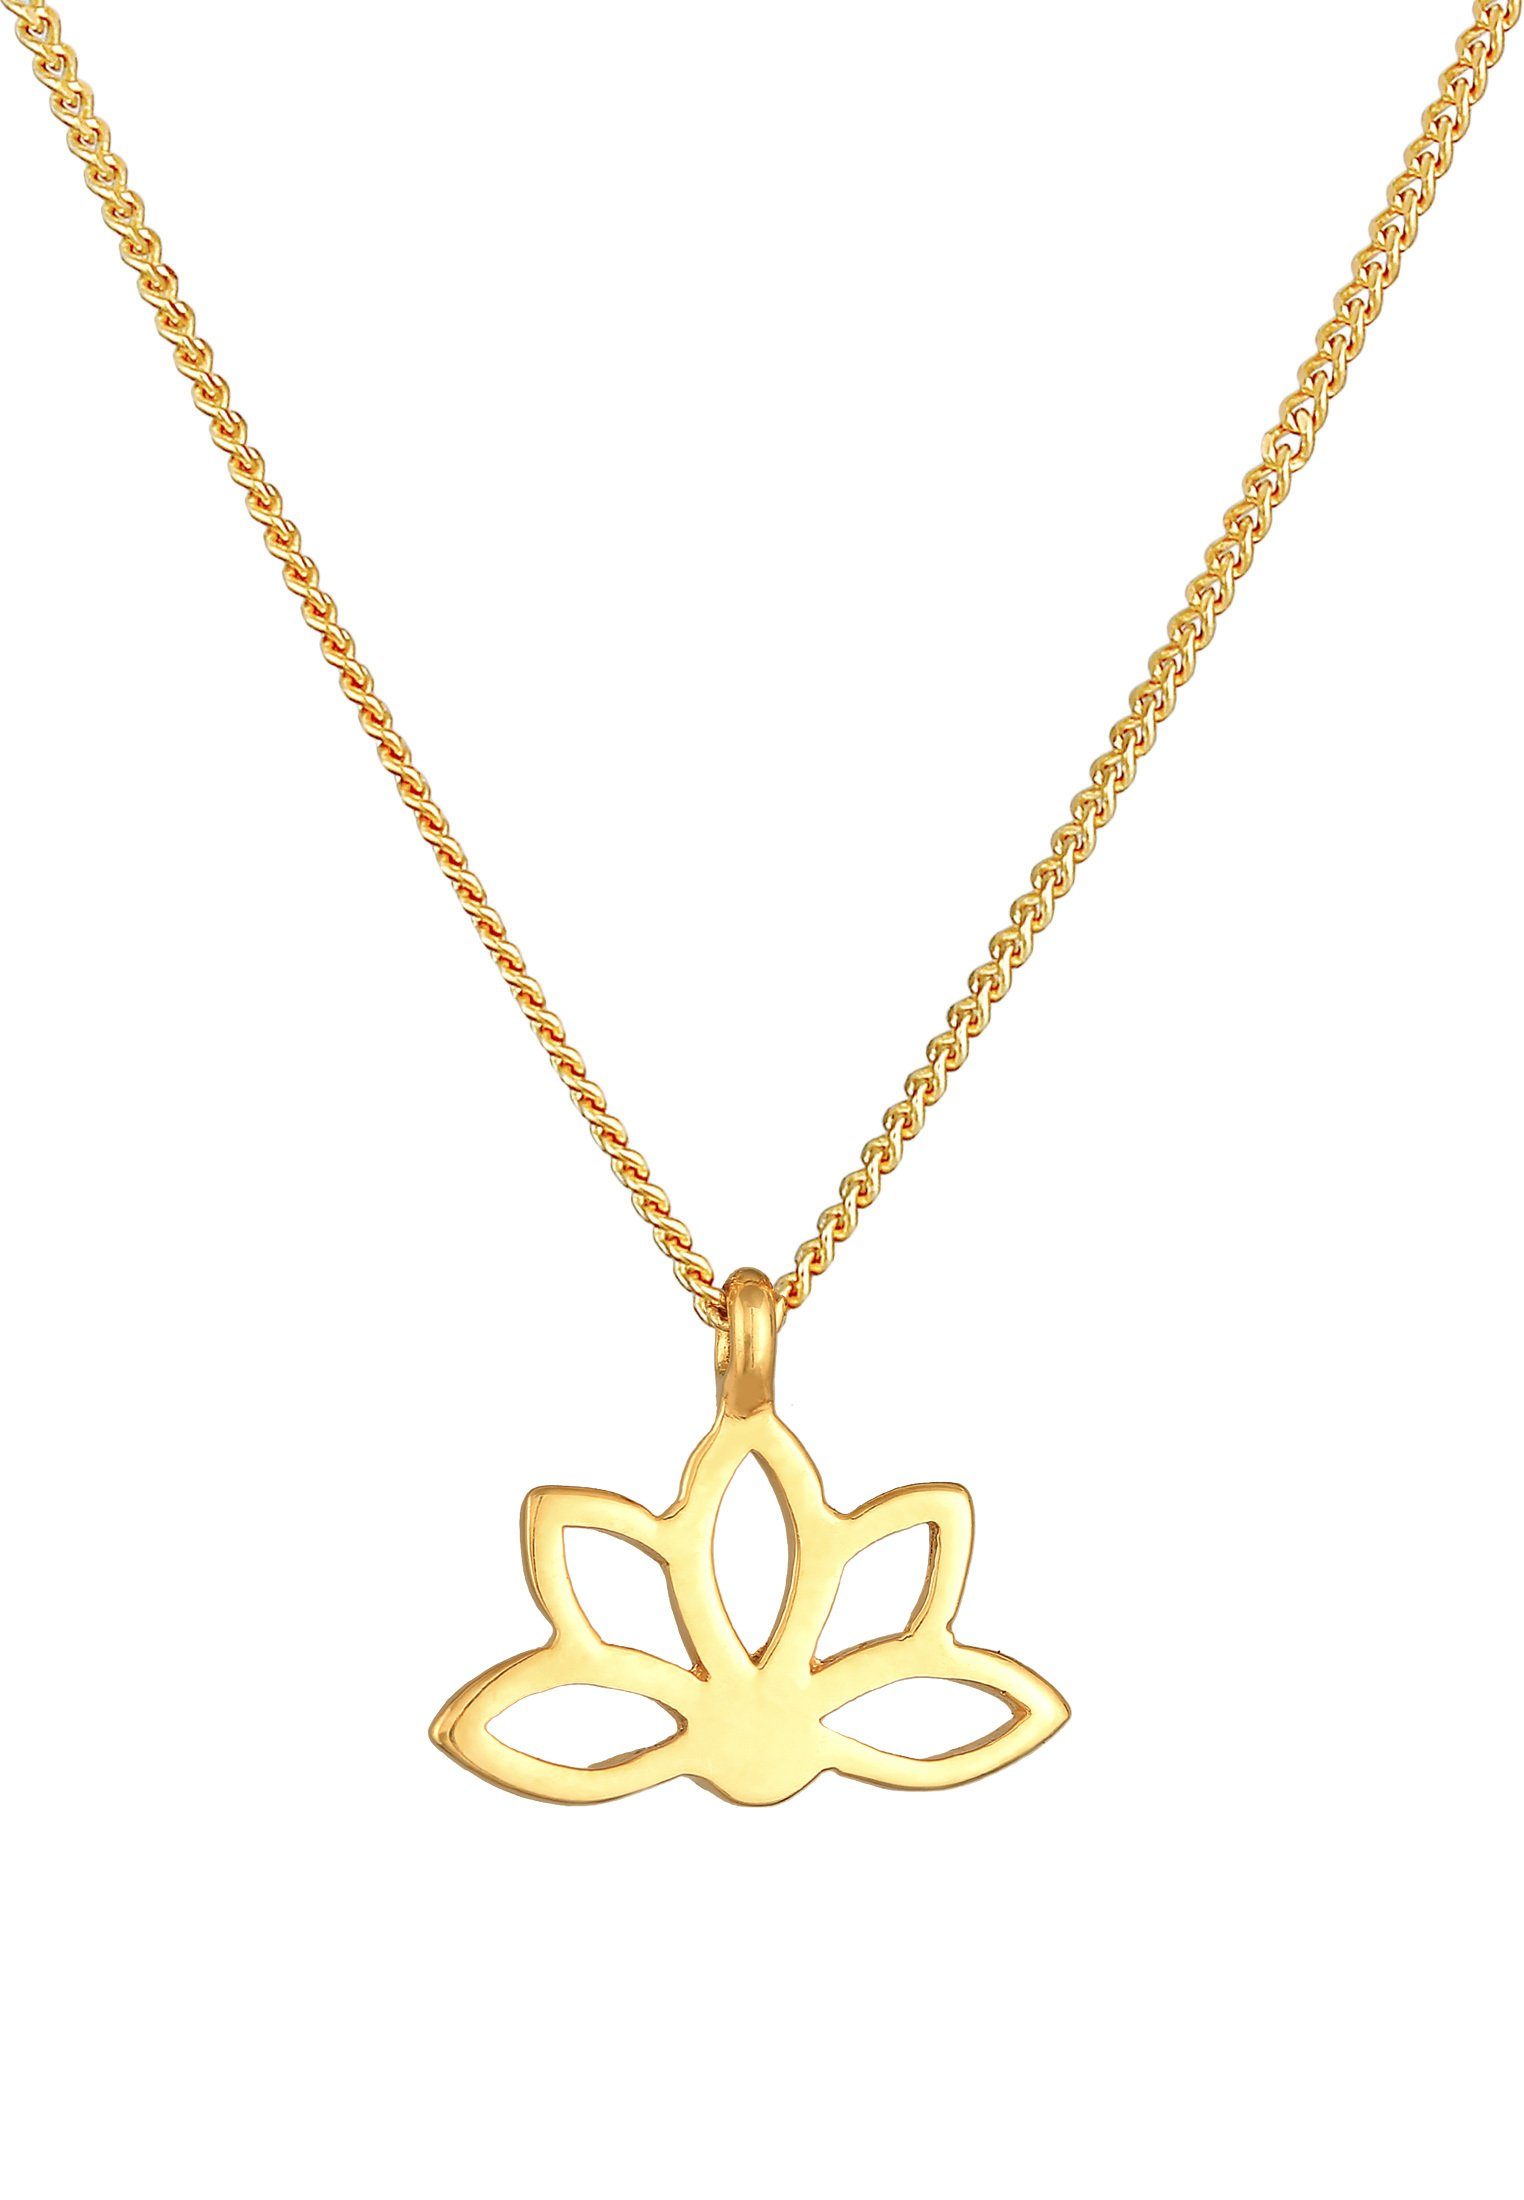 Gold mit Silber, Blume Spirituell 925 Anhänger Blume Elli Lotusblume Kette